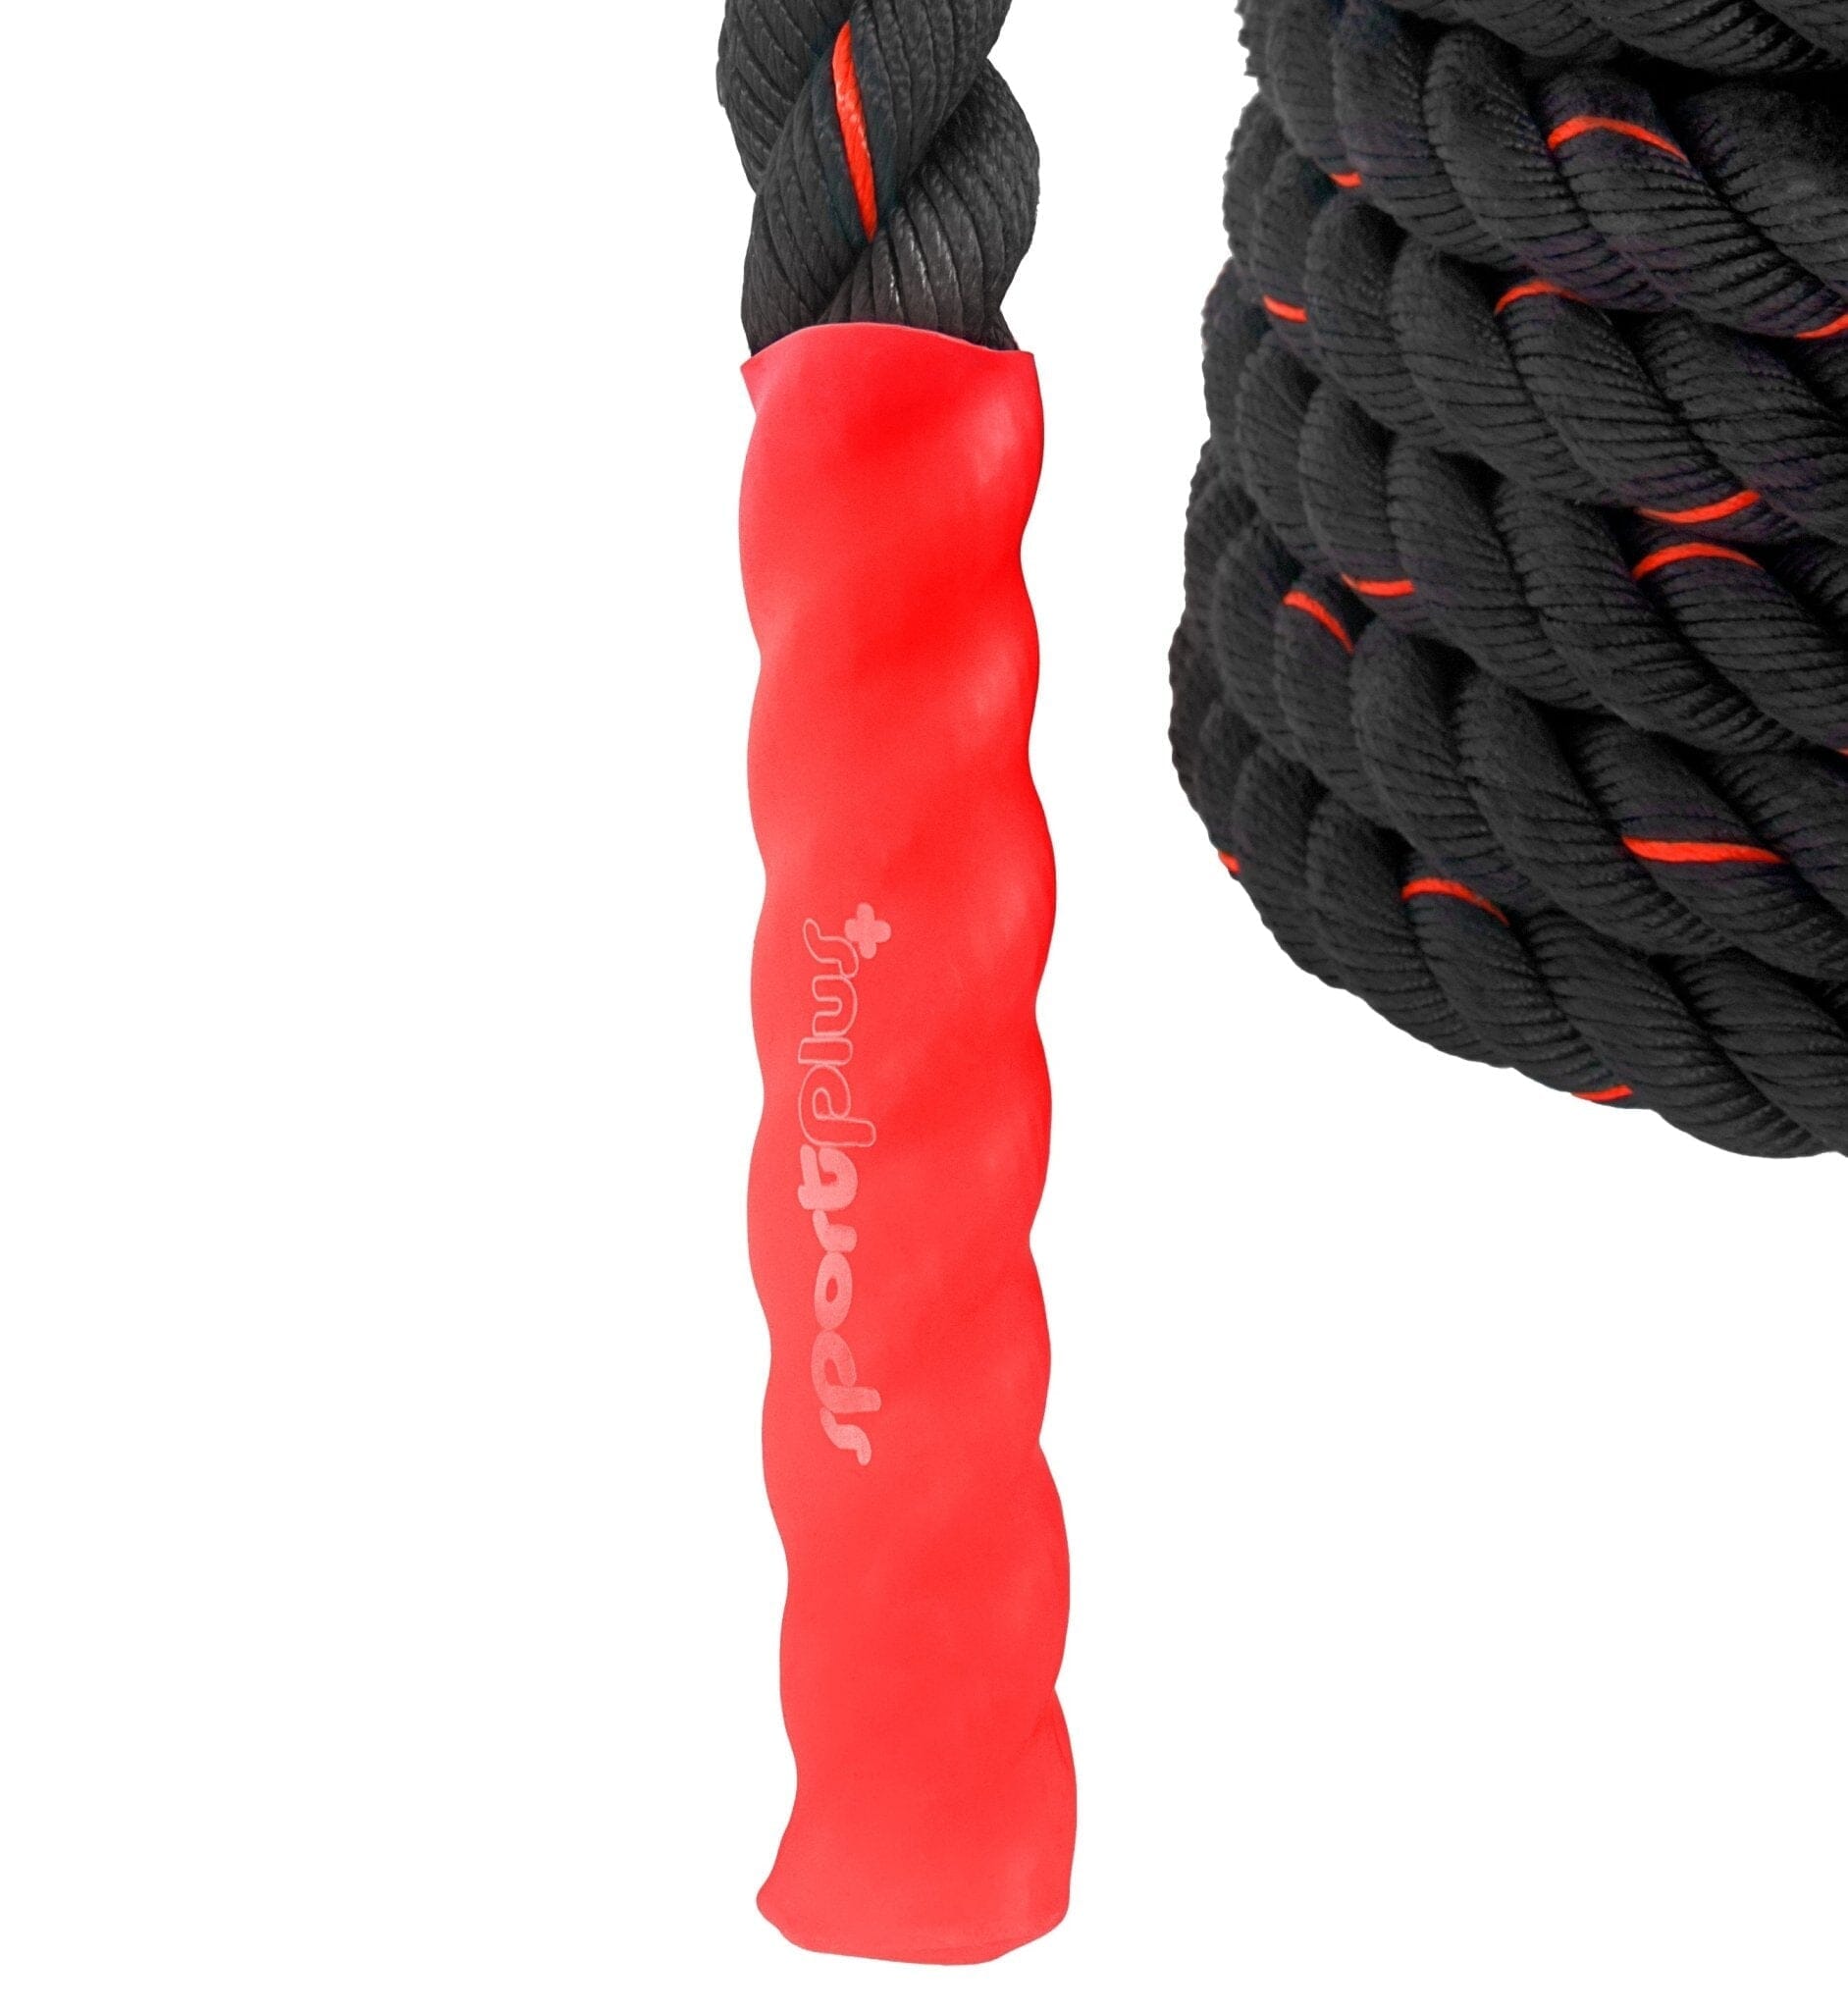 Corde ondulatoire d'entraînement 12 m - Noir, Rouge - Corength - Décathlon